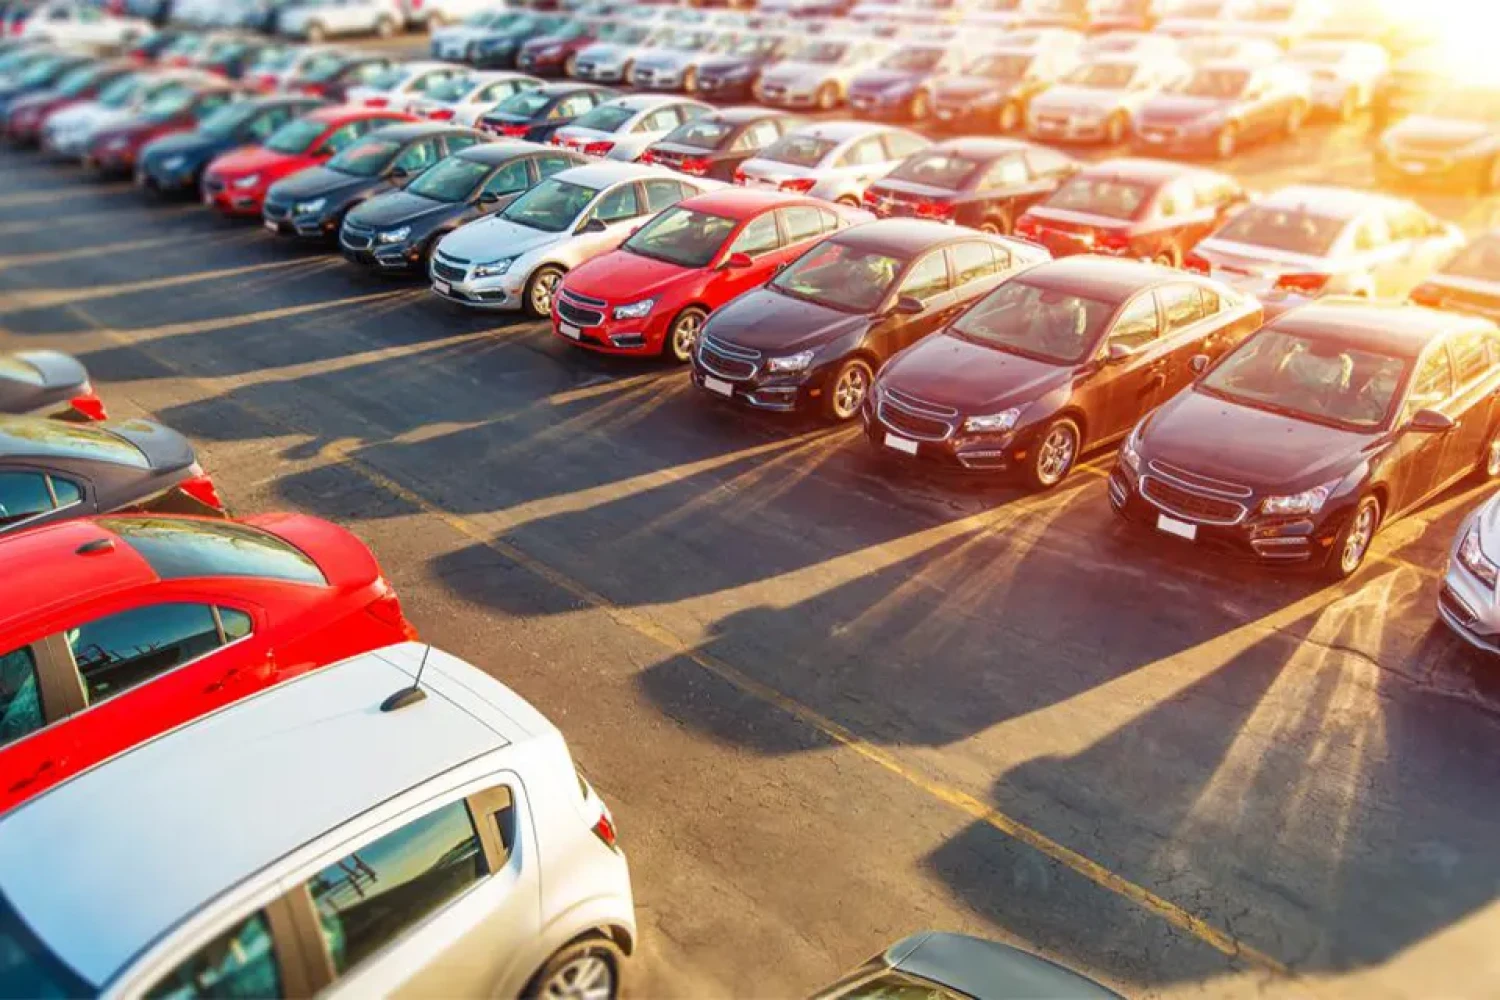 Prodej aut v Česku zpomaluje. Letos se jich zatím prodalo 57 tisíc